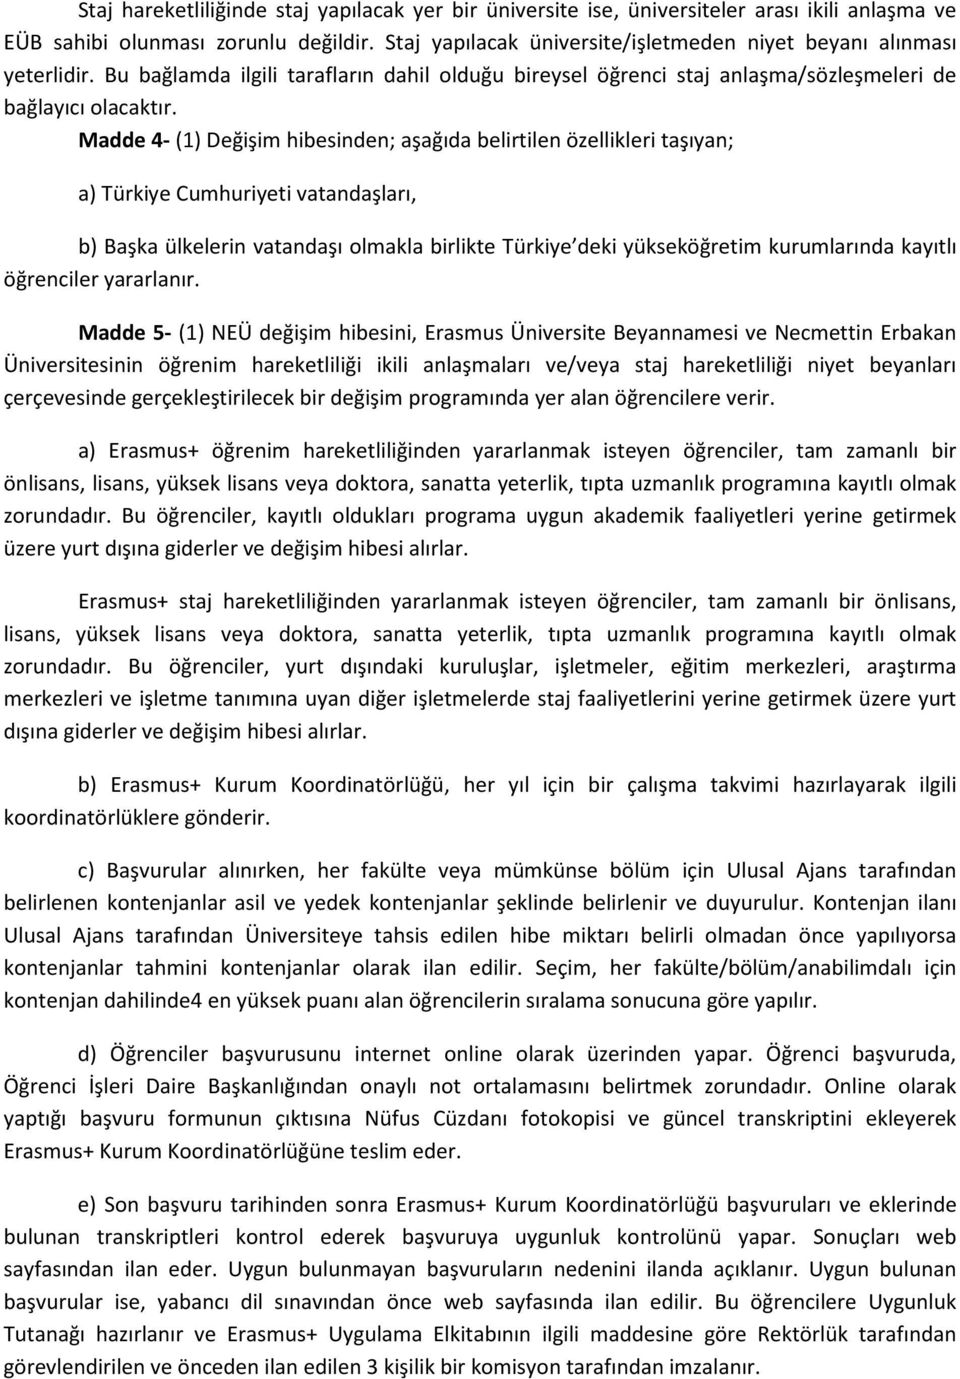 Madde 4- (1) Değişim hibesinden; aşağıda belirtilen özellikleri taşıyan; a) Türkiye Cumhuriyeti vatandaşları, b) Başka ülkelerin vatandaşı olmakla birlikte Türkiye deki yükseköğretim kurumlarında